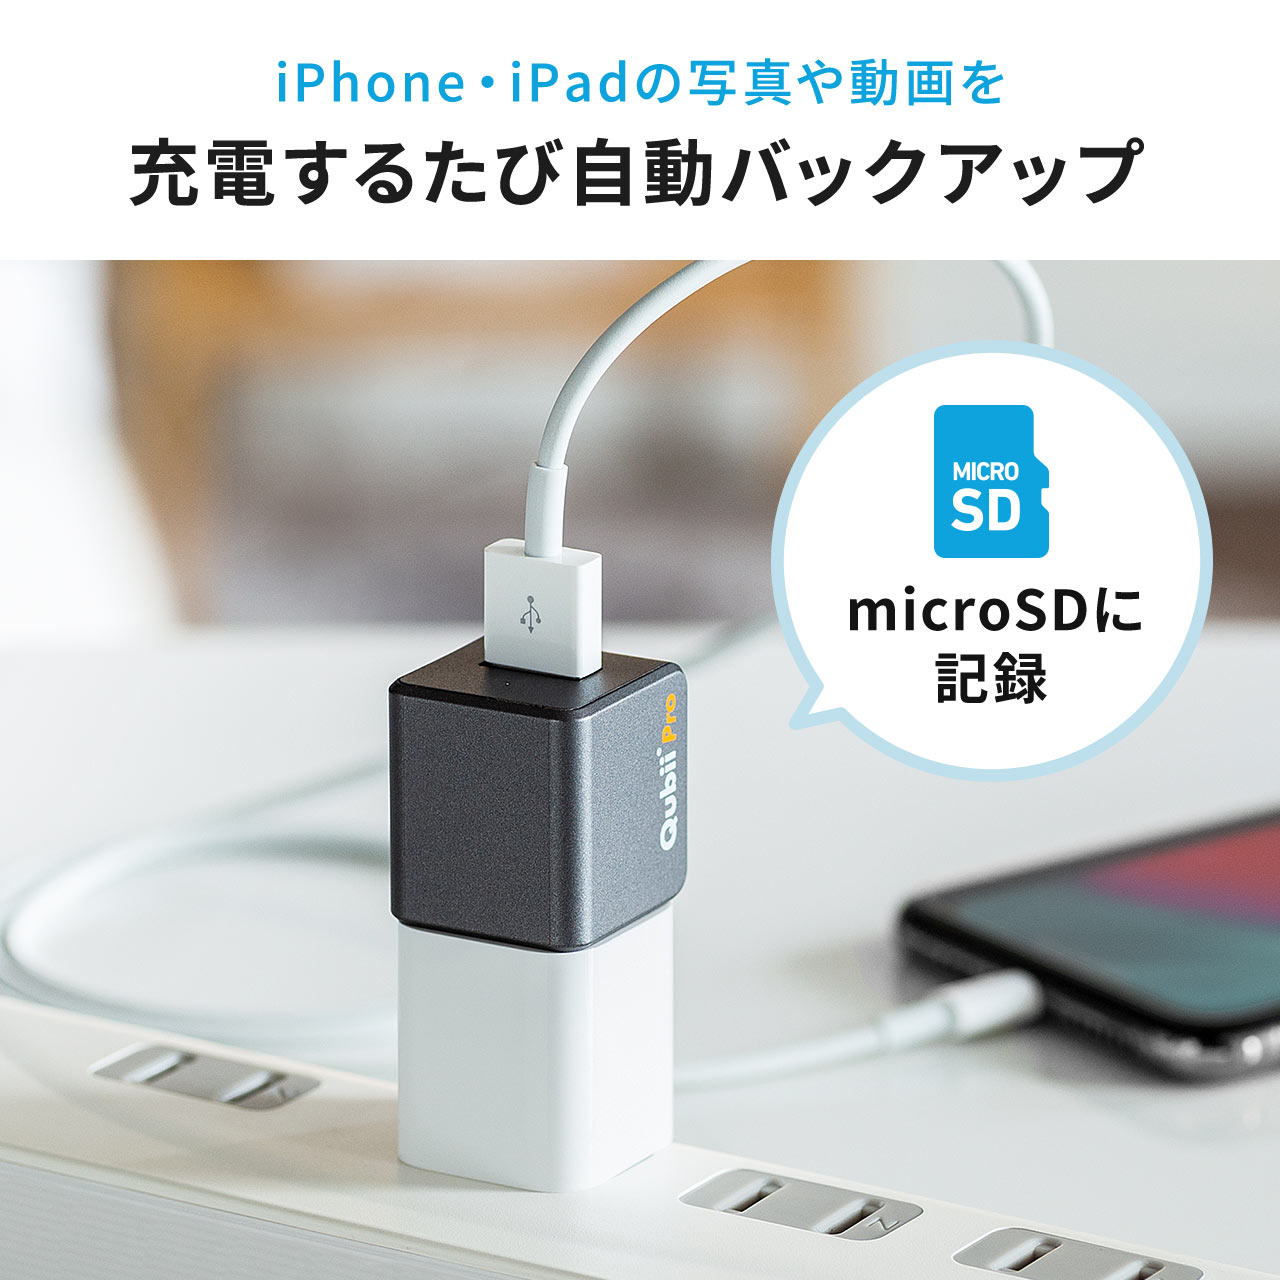 無料発送 iPhoneカードリーダー 充電 データ自動バックアップ microSD Qubii Pro iPad USB3.1 Gen1 2.4A  ネット接続不要 ファイルアプリ対応 EZ4-ADRIP011GY